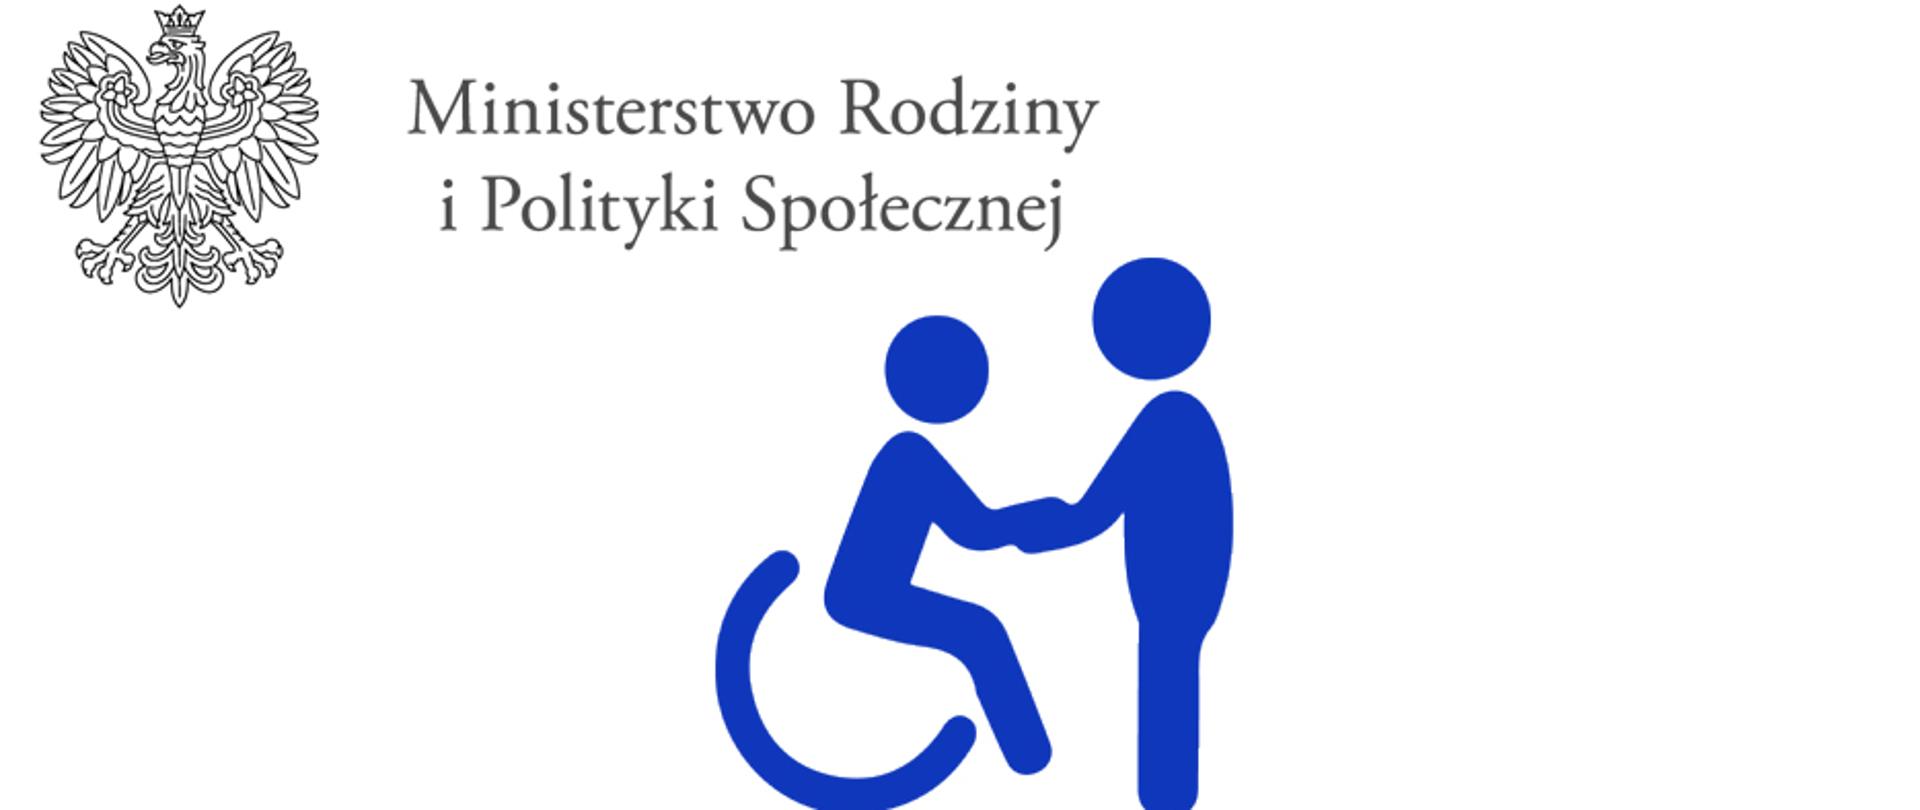 Logo Osoby Niepełnosprawnej  witającej się z osobą pełnosprawną, Powyżej znajuje się logotyp Ministerstwa.